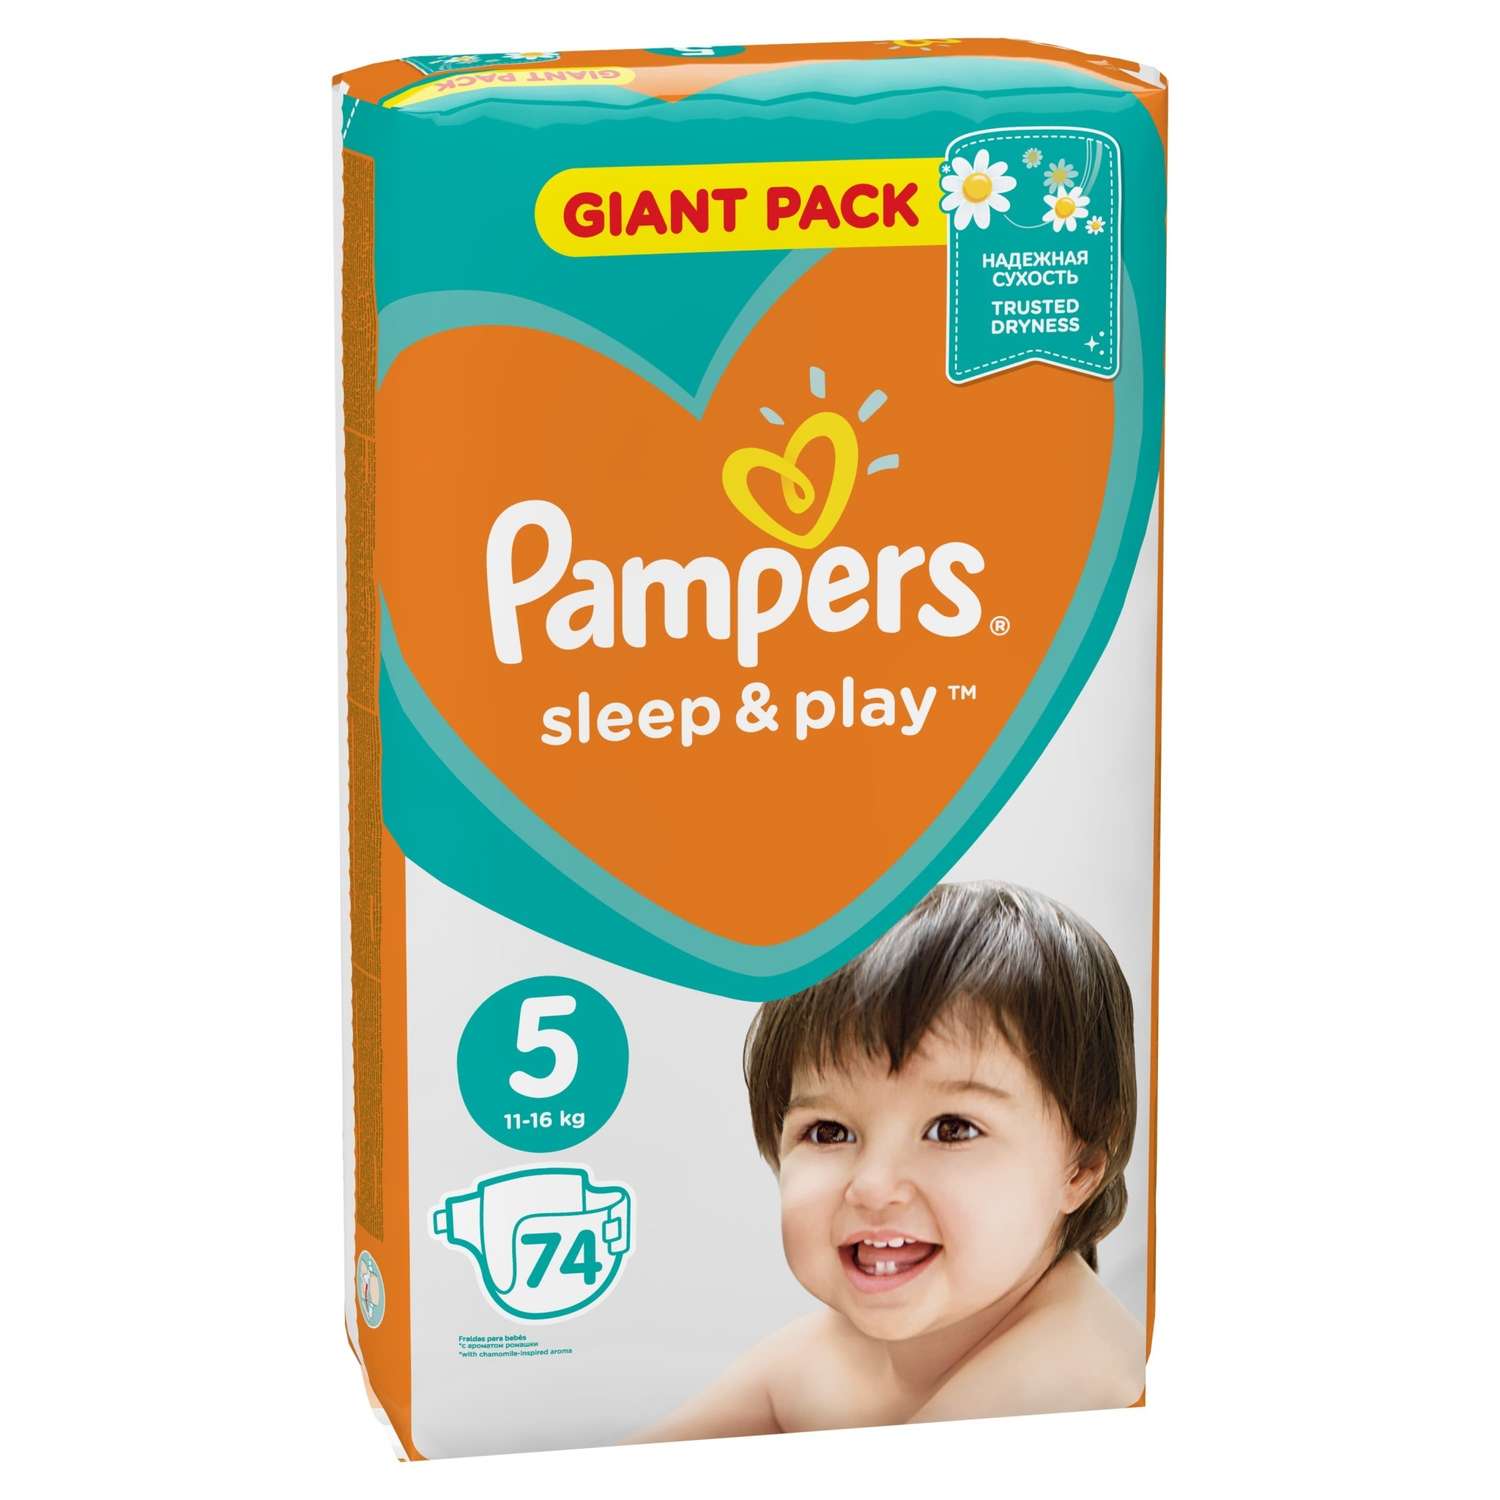 Подгузники Pampers Sleep and Play 5 11-16кг 74шт - фото 9